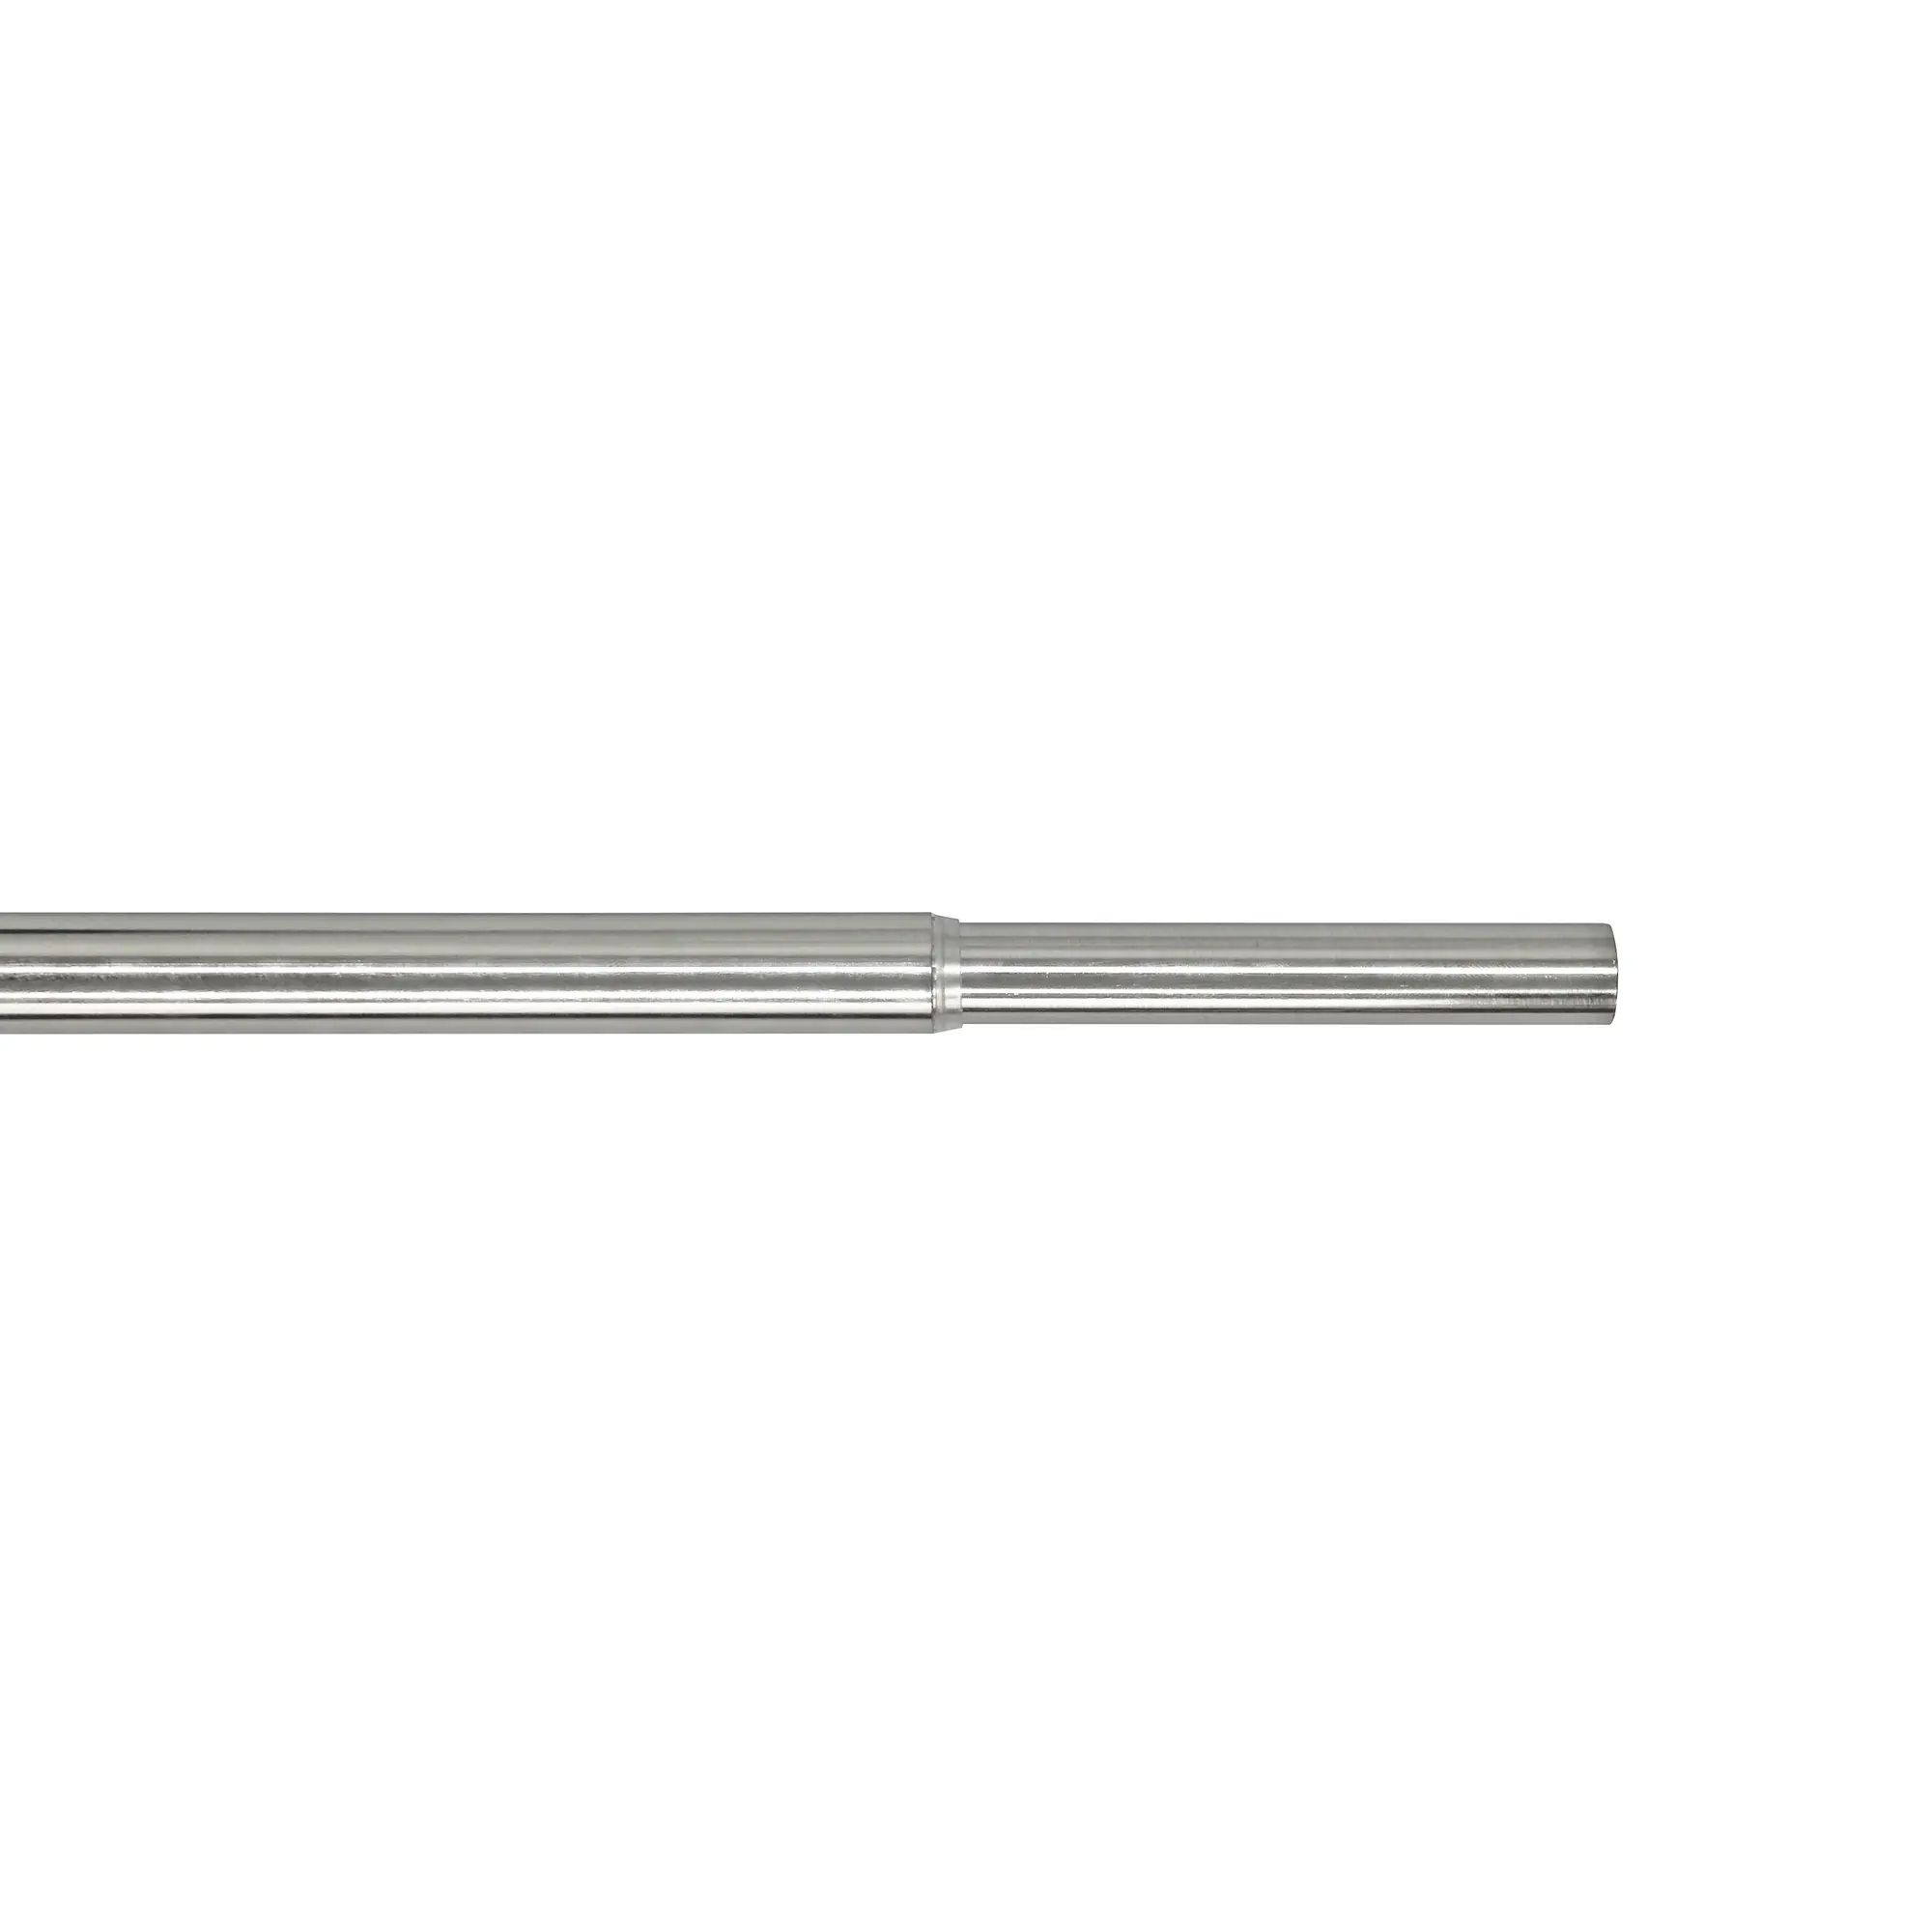 Bastone per tenda estensibile Glam in metallo Ø 17 mm cromo spazzolato DA 160 a 300 cm INSPIRE - 2